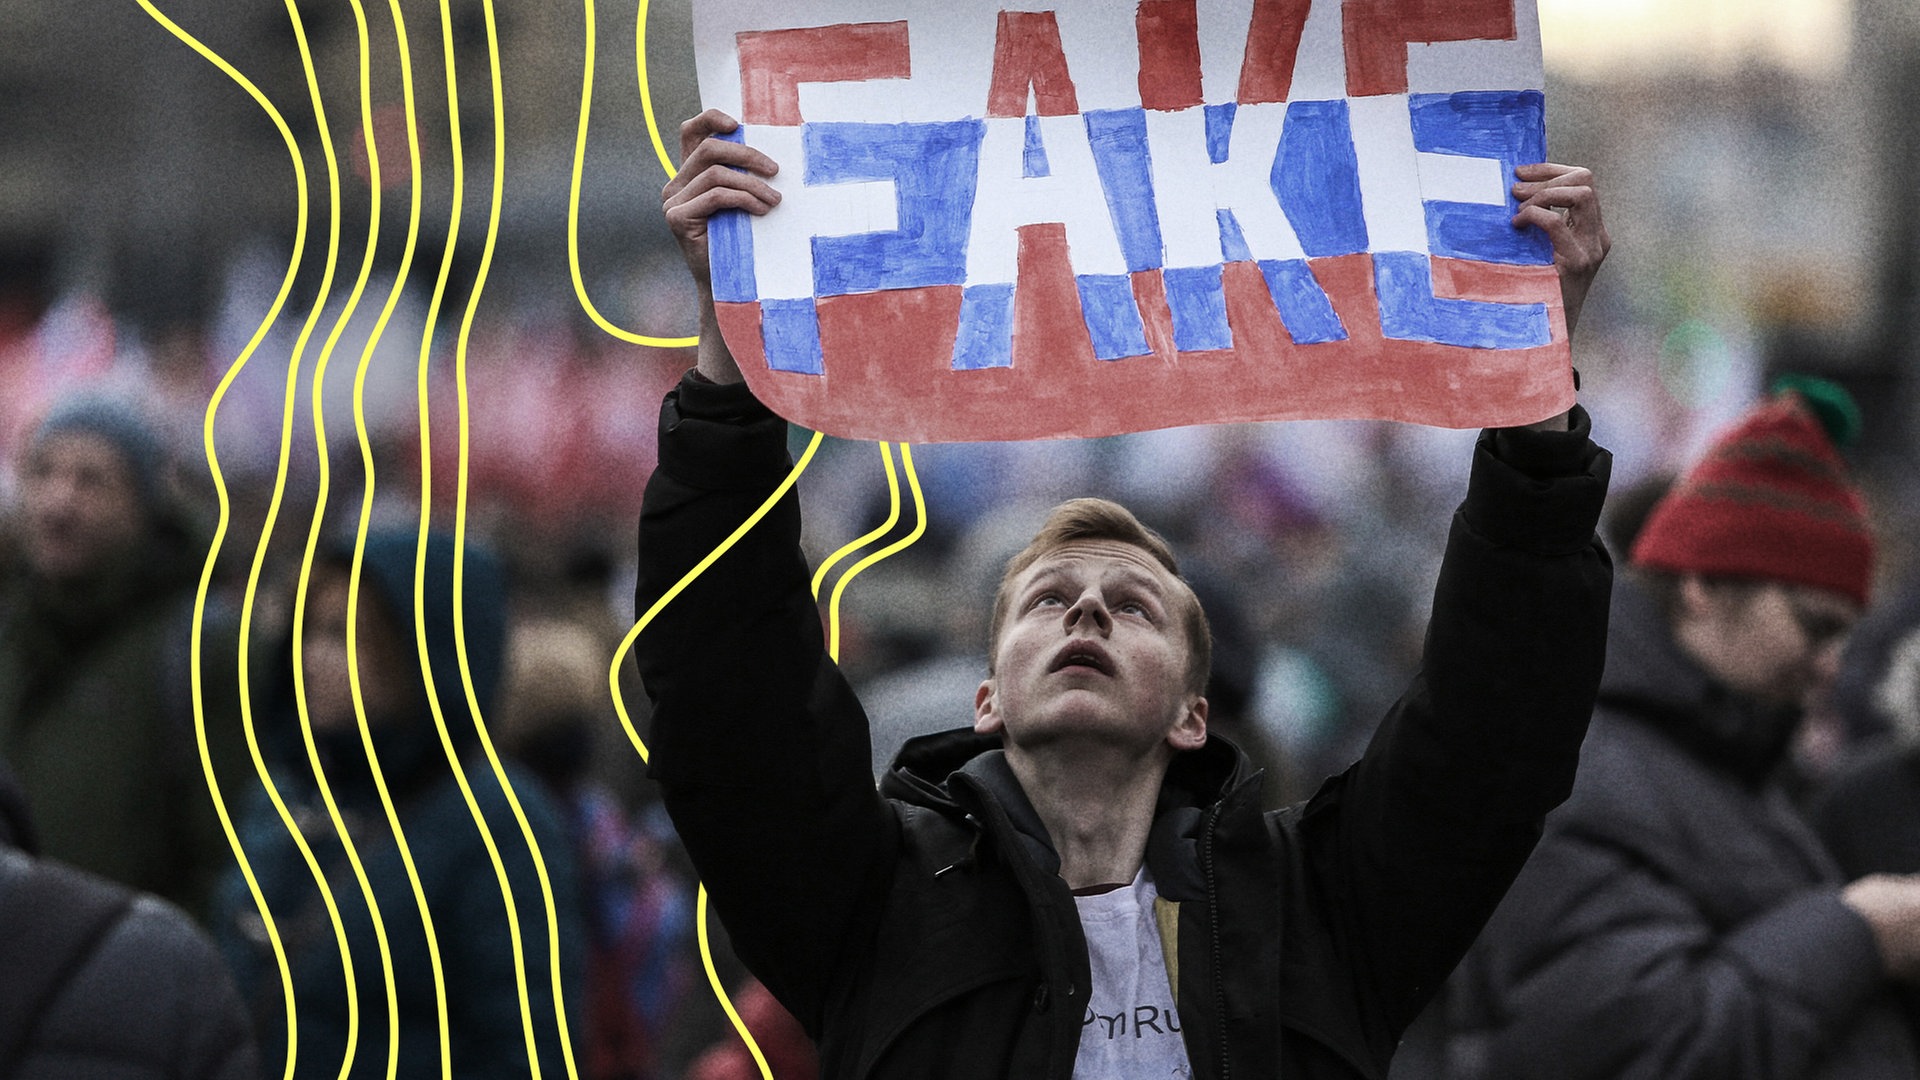 Ein Demonstrant hält, während einer Demonstration, ein Plakat mit der Aufschrift "FAKE" in der Hand. Teilnehmer einer Oppositionskundgebung im Zentrum von Moskau protestierten gegen die Verschärfung der staatlichen Kontrolle über das Internet in Russland.